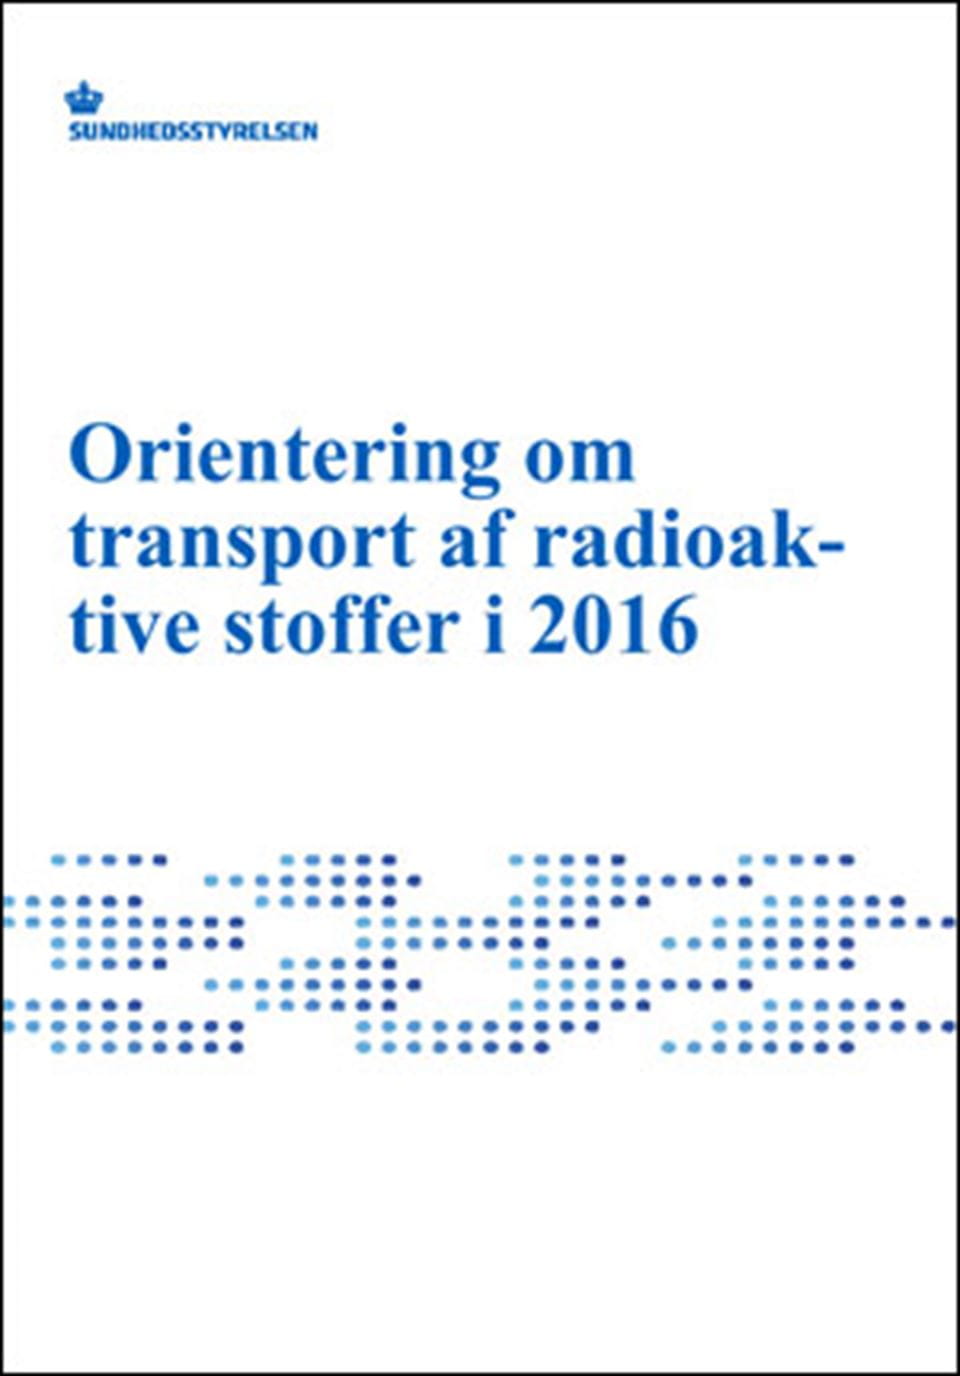 Orientering om transport af radioaktive stoffer 2016 - Sundhedsstyrelsen